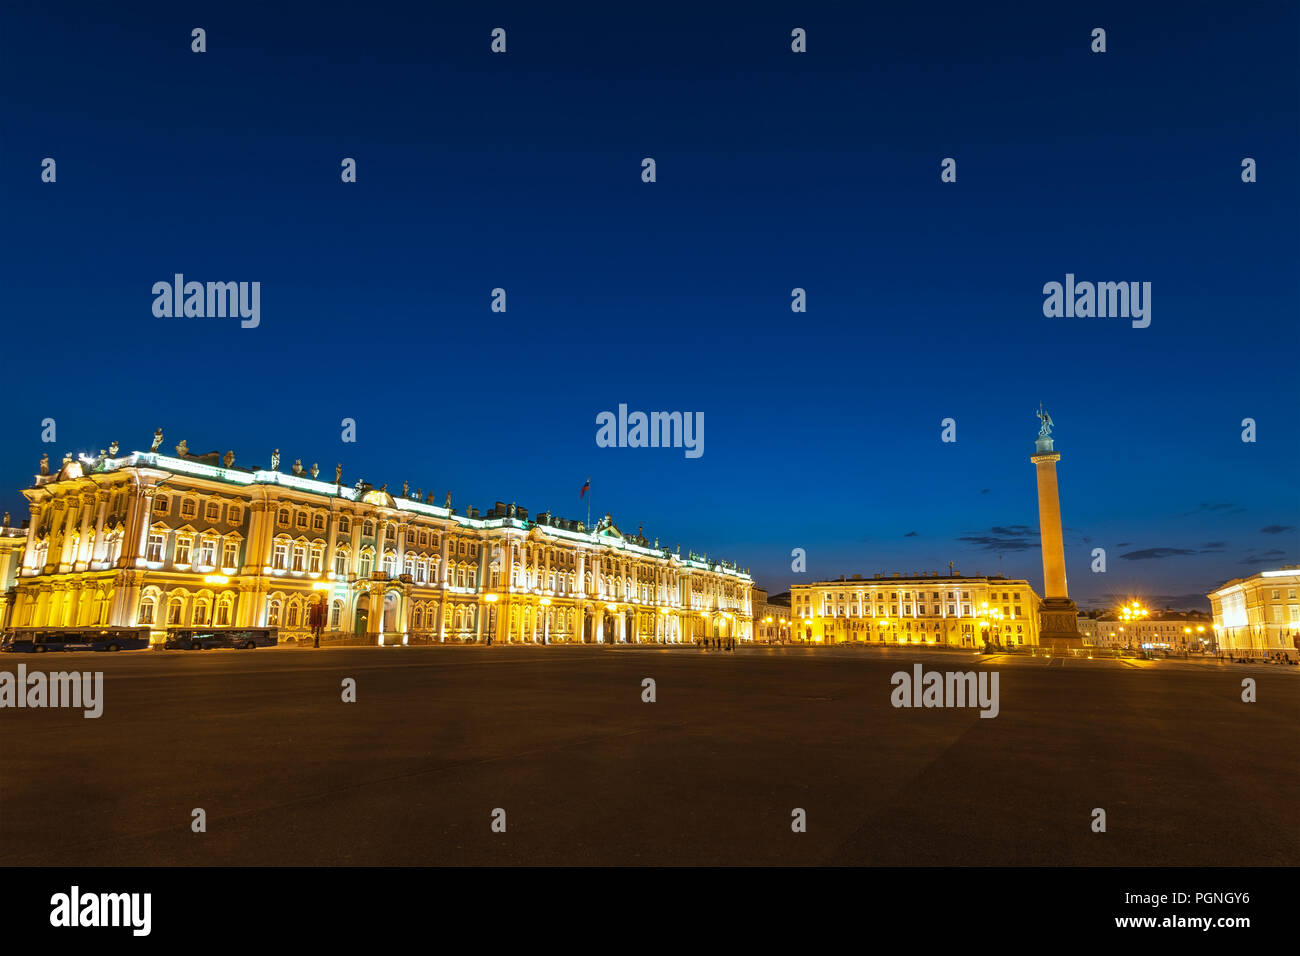 La noche de San Petersburgo, ciudad en la plaza del palacio, San Petersburgo, Rusia Foto de stock